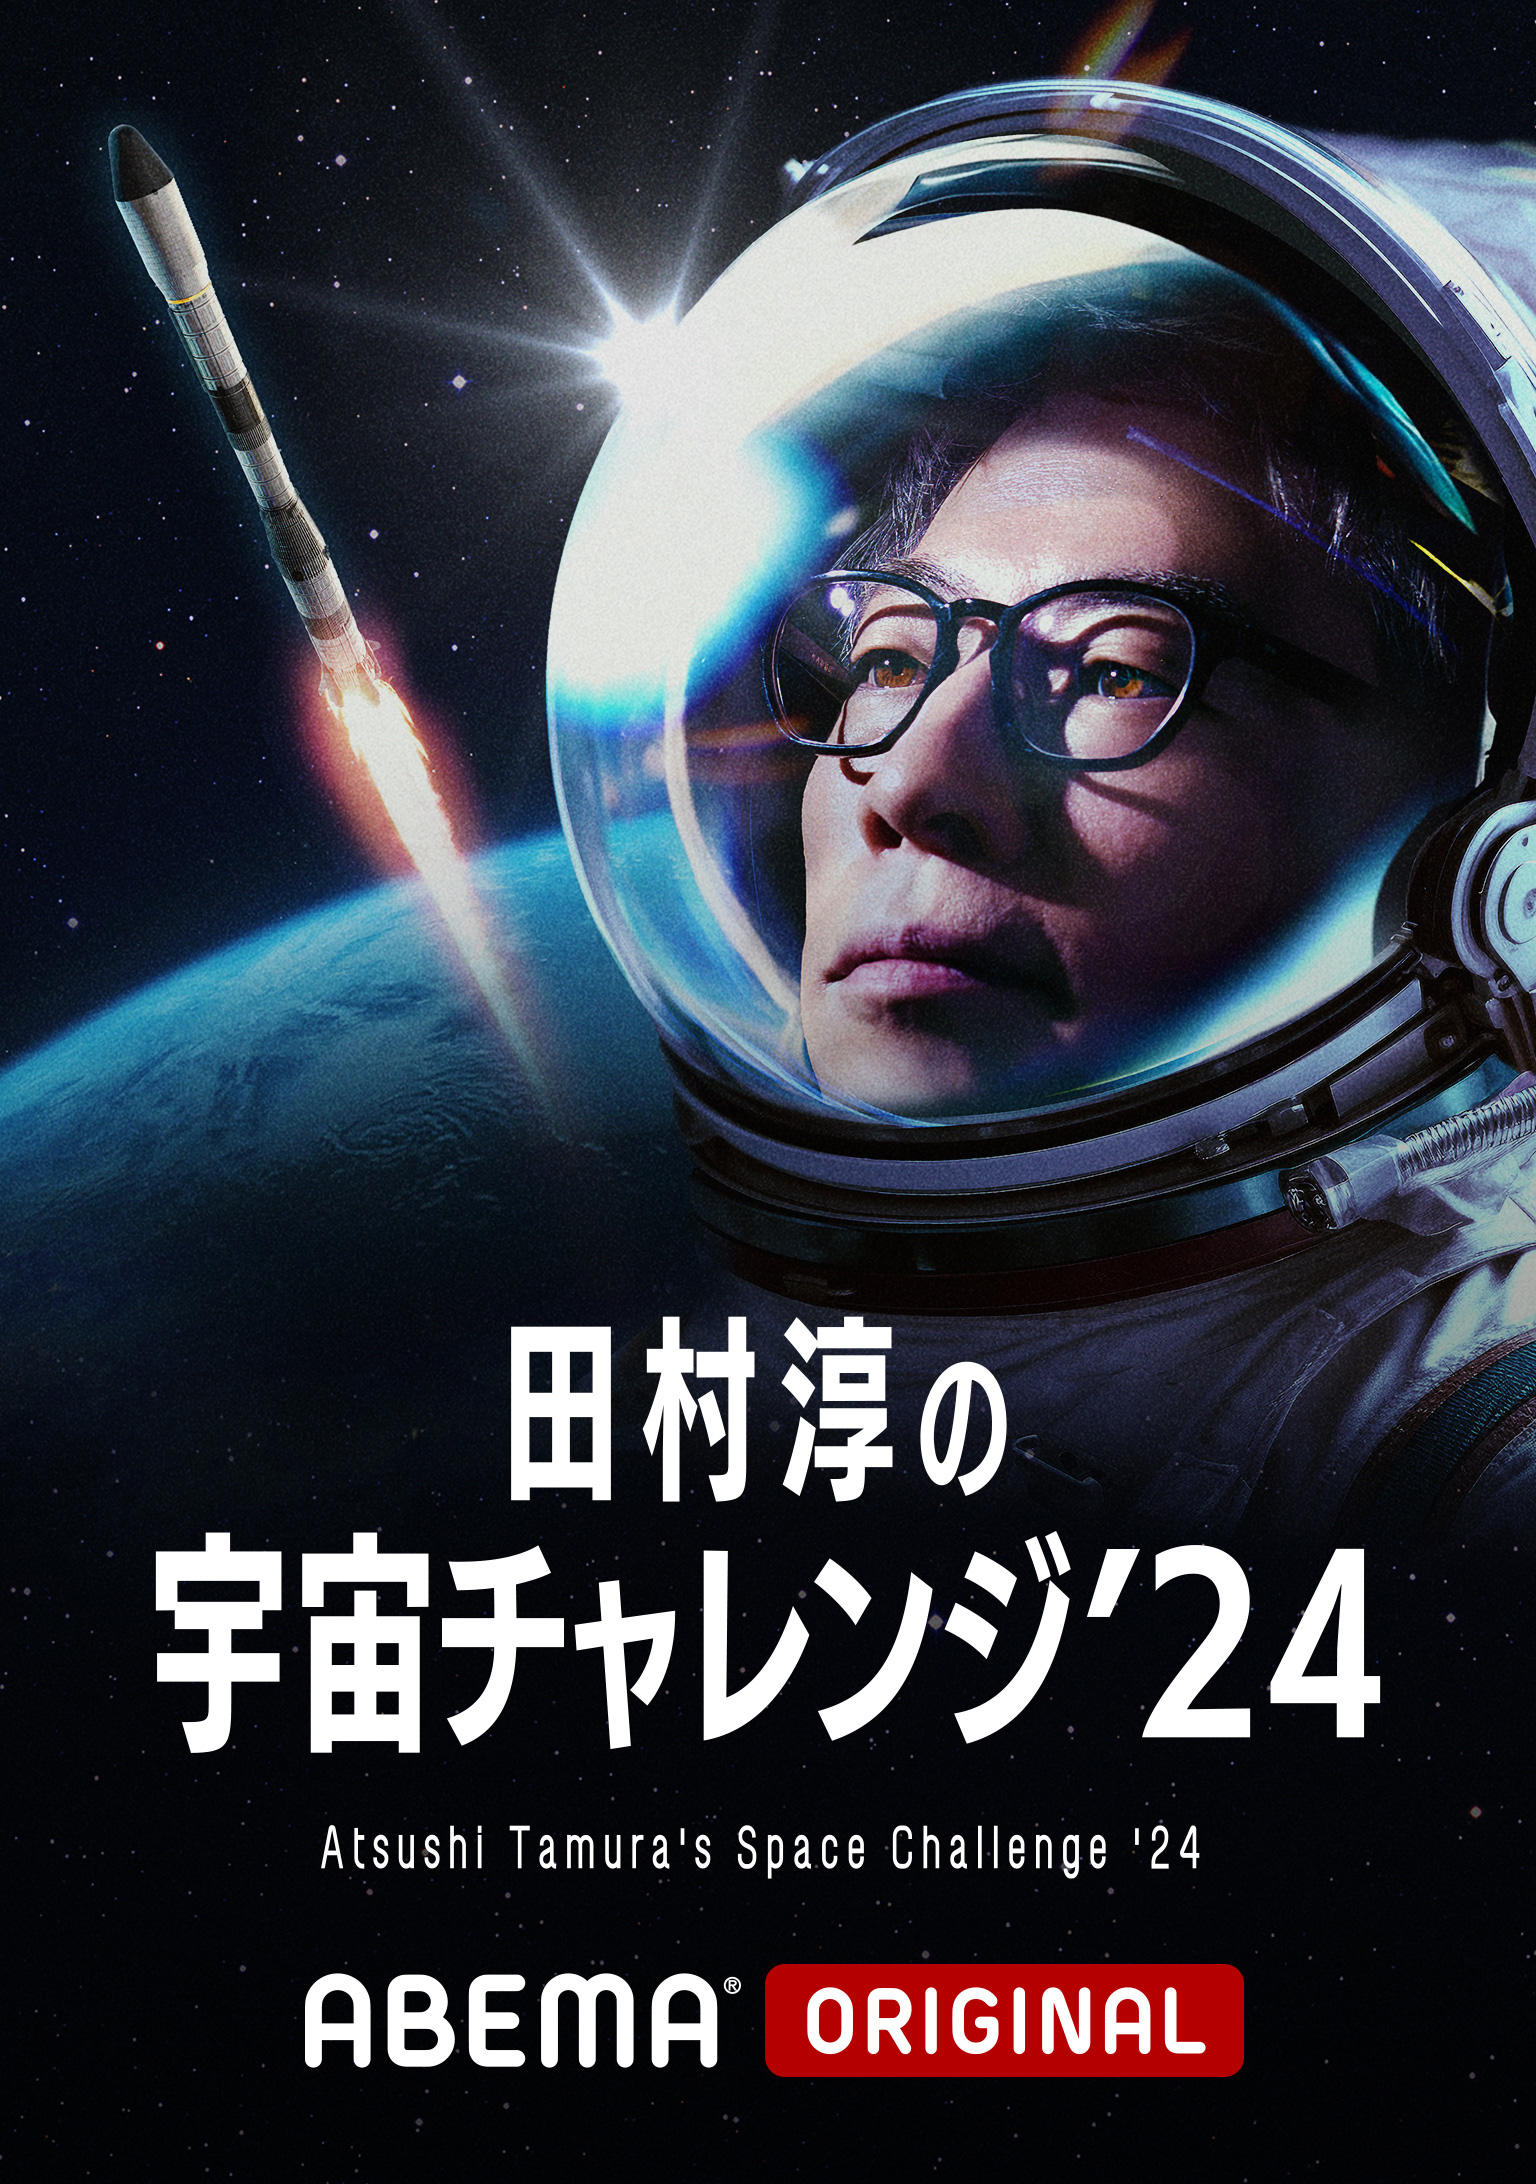 田村淳の宇宙チャレンジ’24